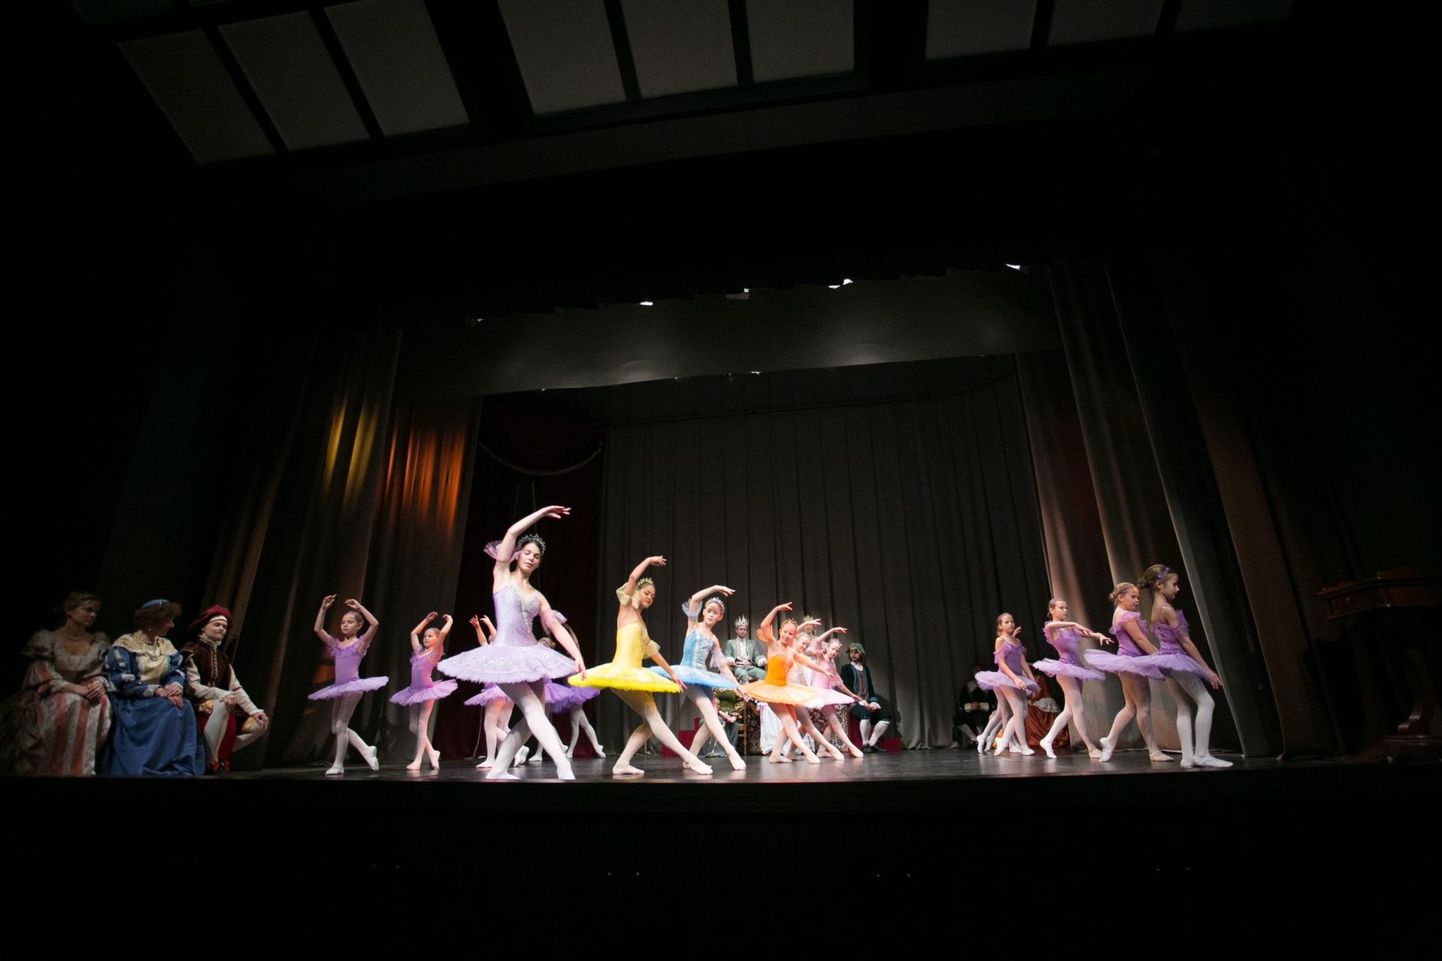 Balletivaatamisvõimalusi kultuurifestivalil jagub. Fotol on hetk Kaurikooli balletistuudio mõne aasta tagusest etendusest.